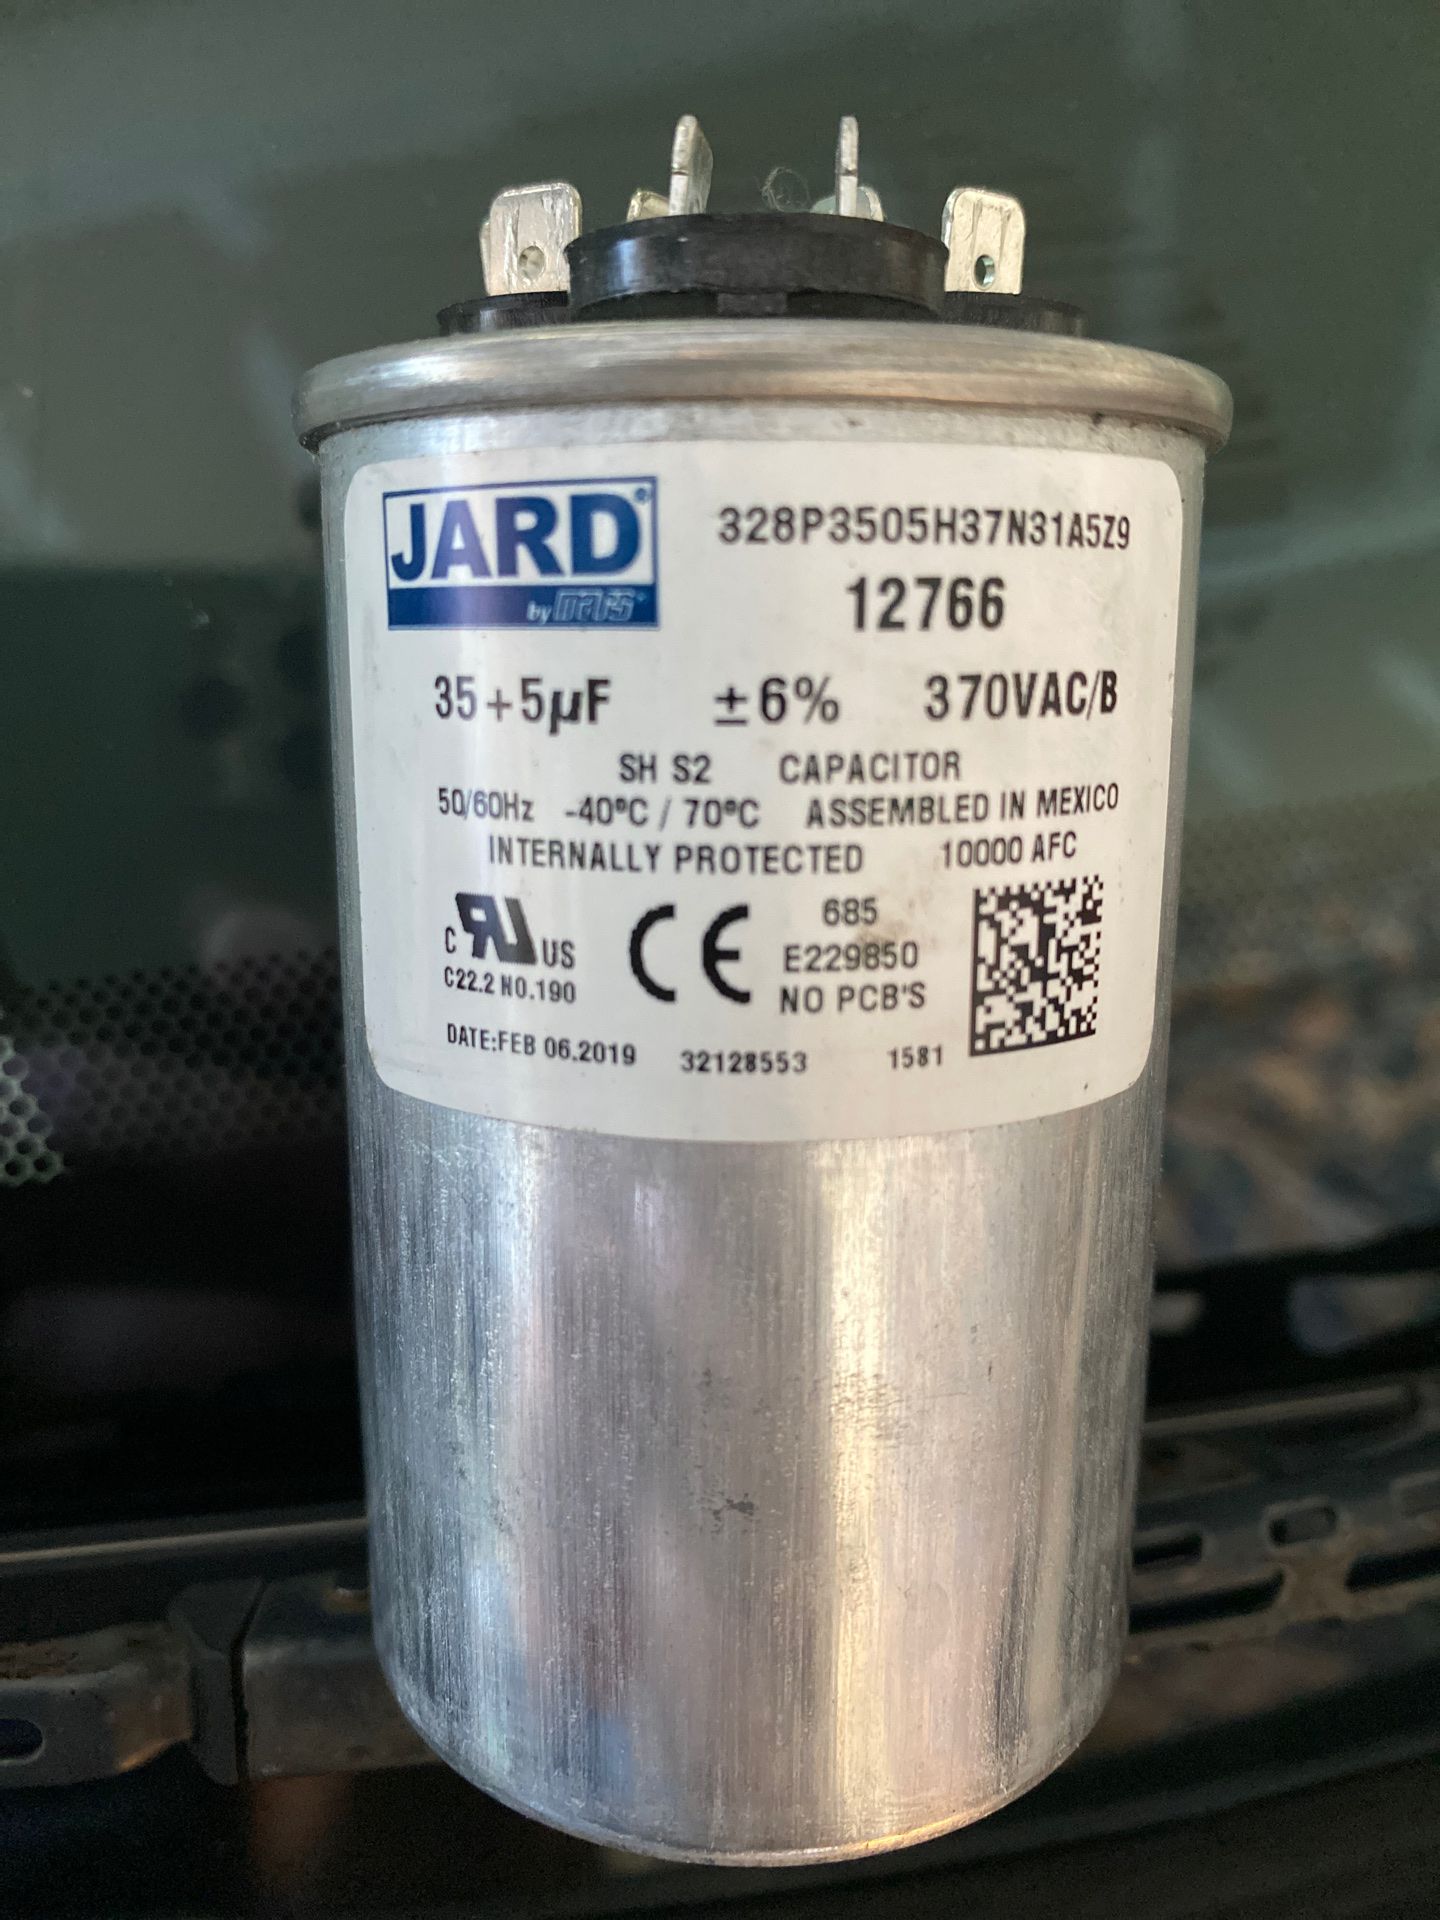 35+5 uf 12766 JARD capacitor